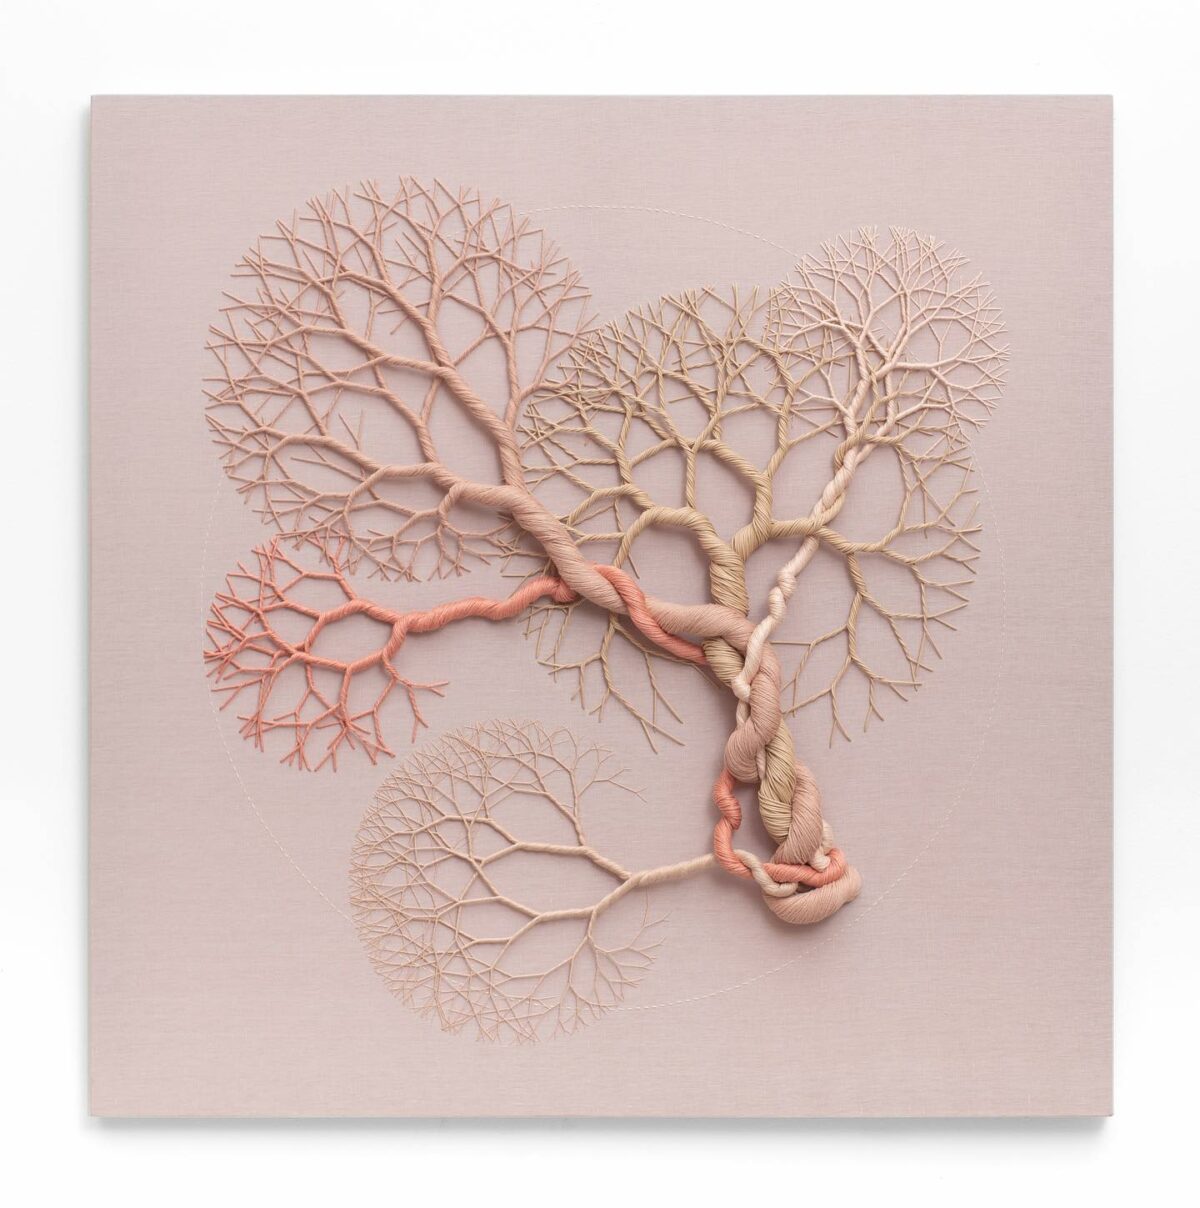 Ciclotramas Hypnotizing Tree And Roots Like Installations By Janaina Mello Landini 12